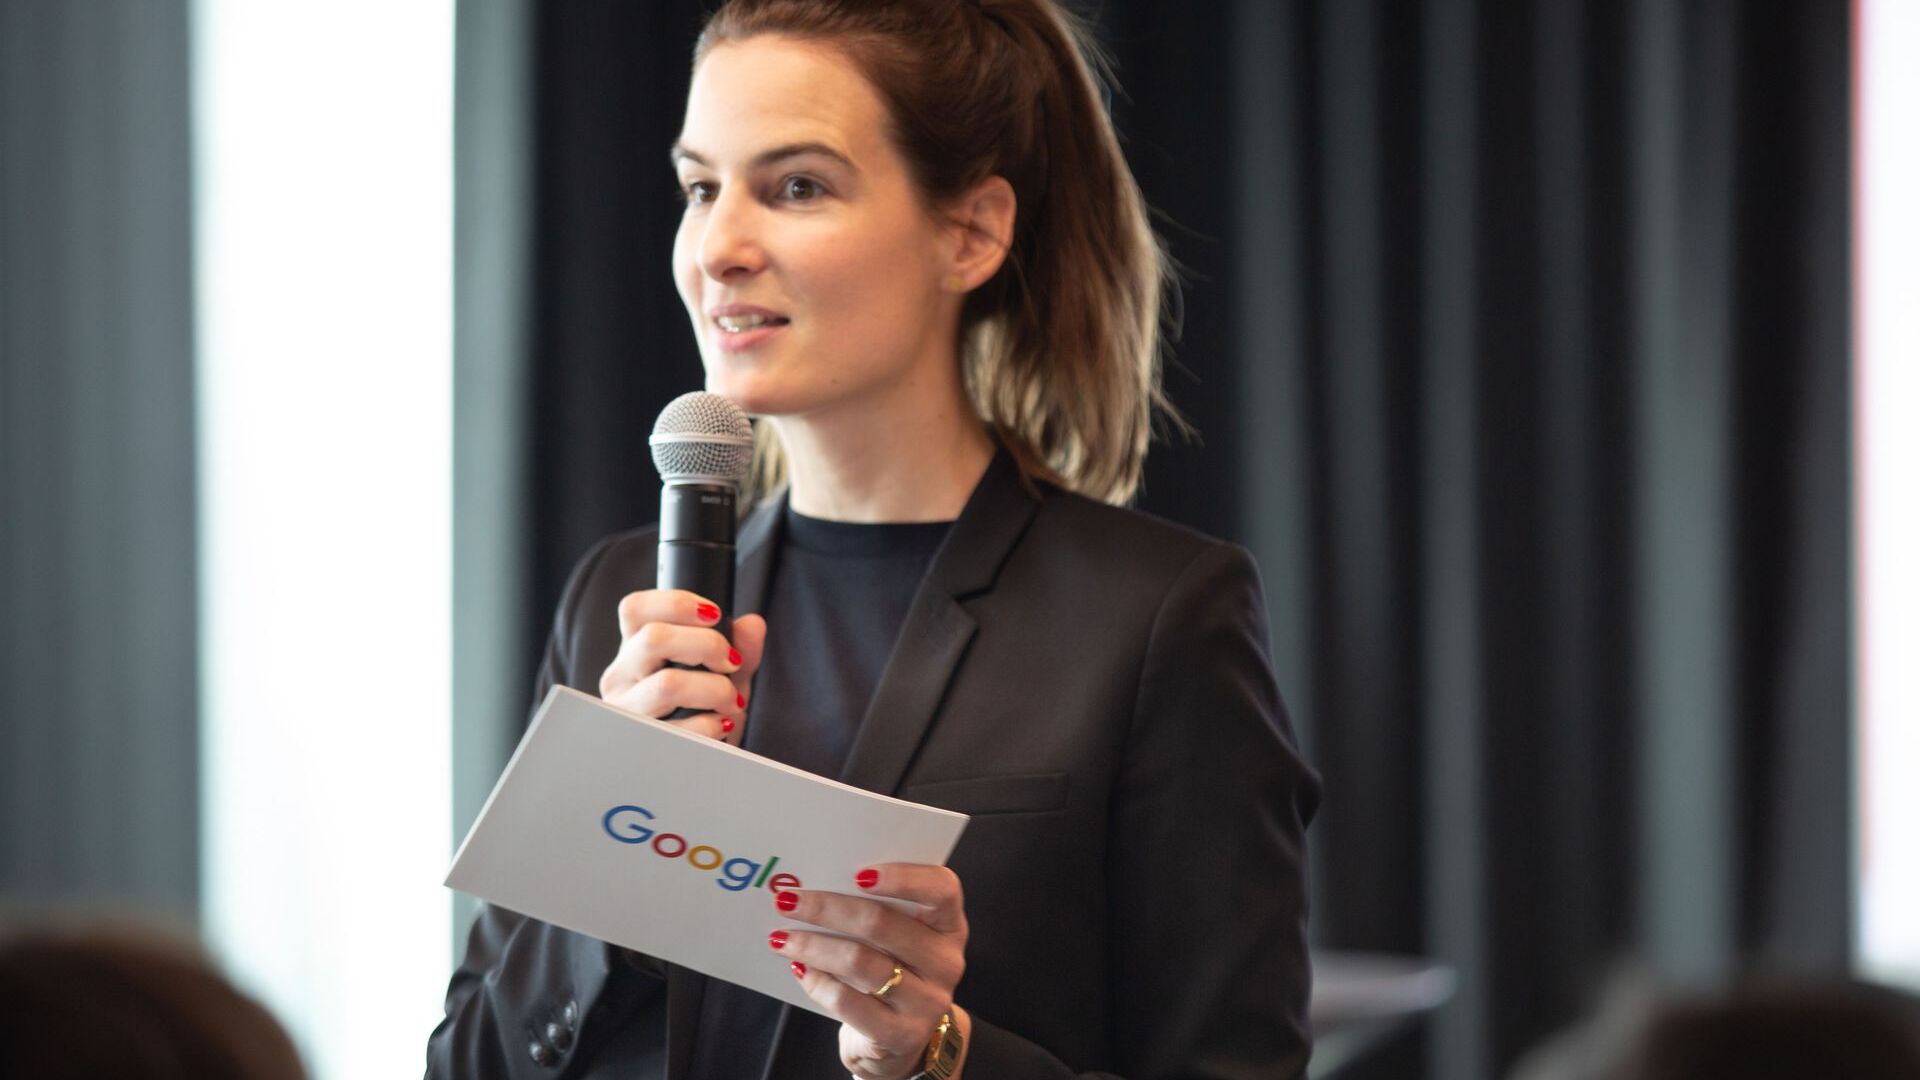 Pia De Carli, Google সুইজারল্যান্ডের মিডিয়া টিম, 27 জুন, 2022-এ জুরিখে নতুন Google ক্যাম্পাস ইউরোপালির আনুষ্ঠানিক উদ্বোধনে অংশ নিয়েছিলেন